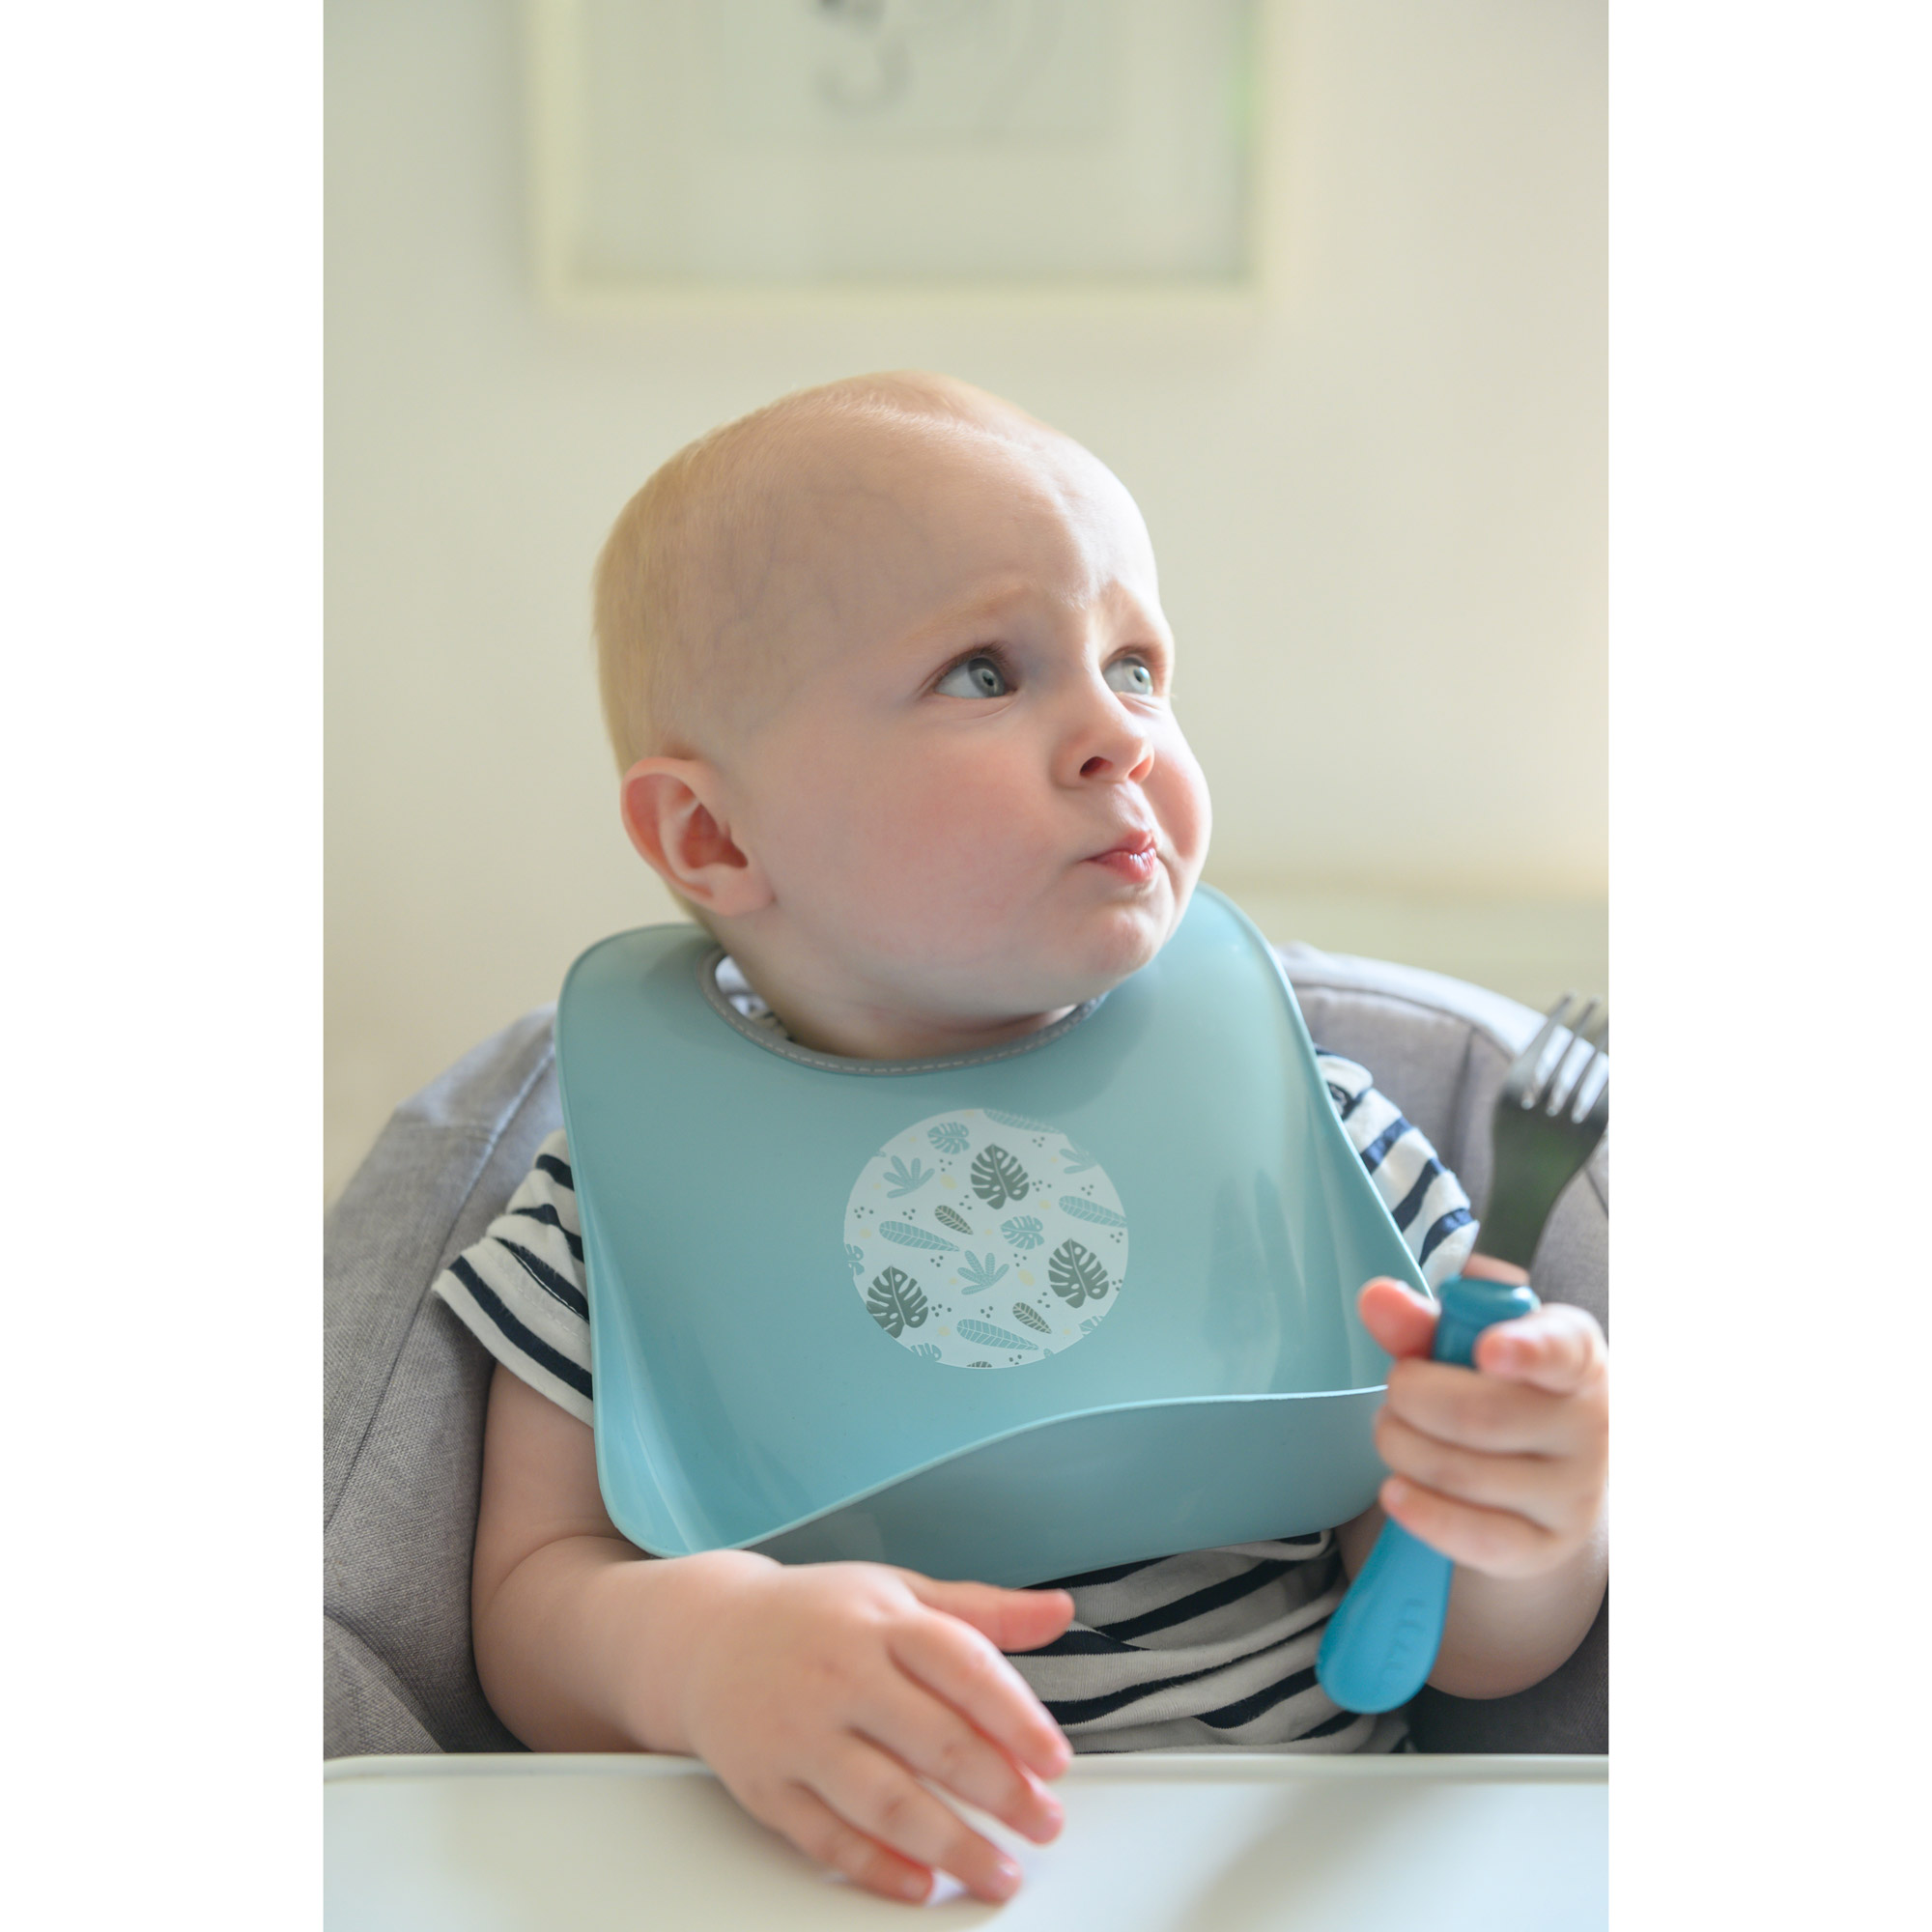 Bavoir bébé, achat de bavettes pour bébé : Aubert